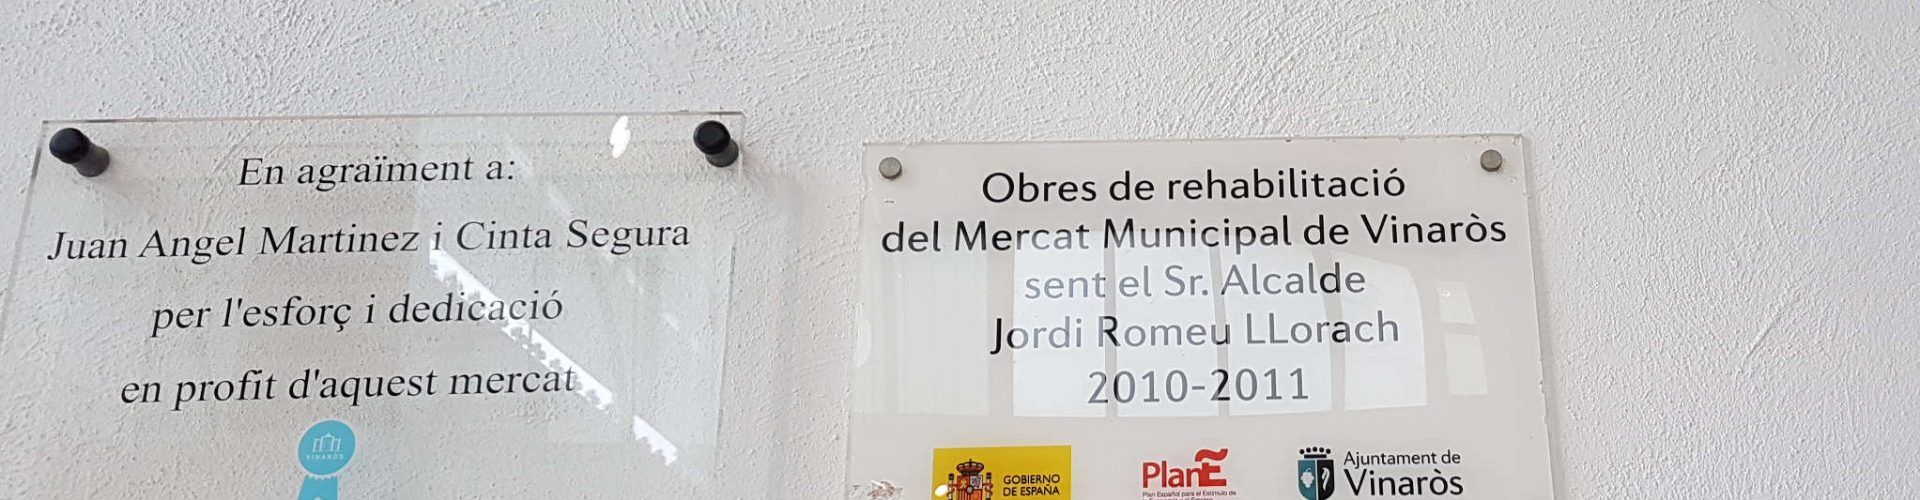 El Ayuntamiento retira las placas del exalcalde Romeu por haber sido condenado por prevaricación